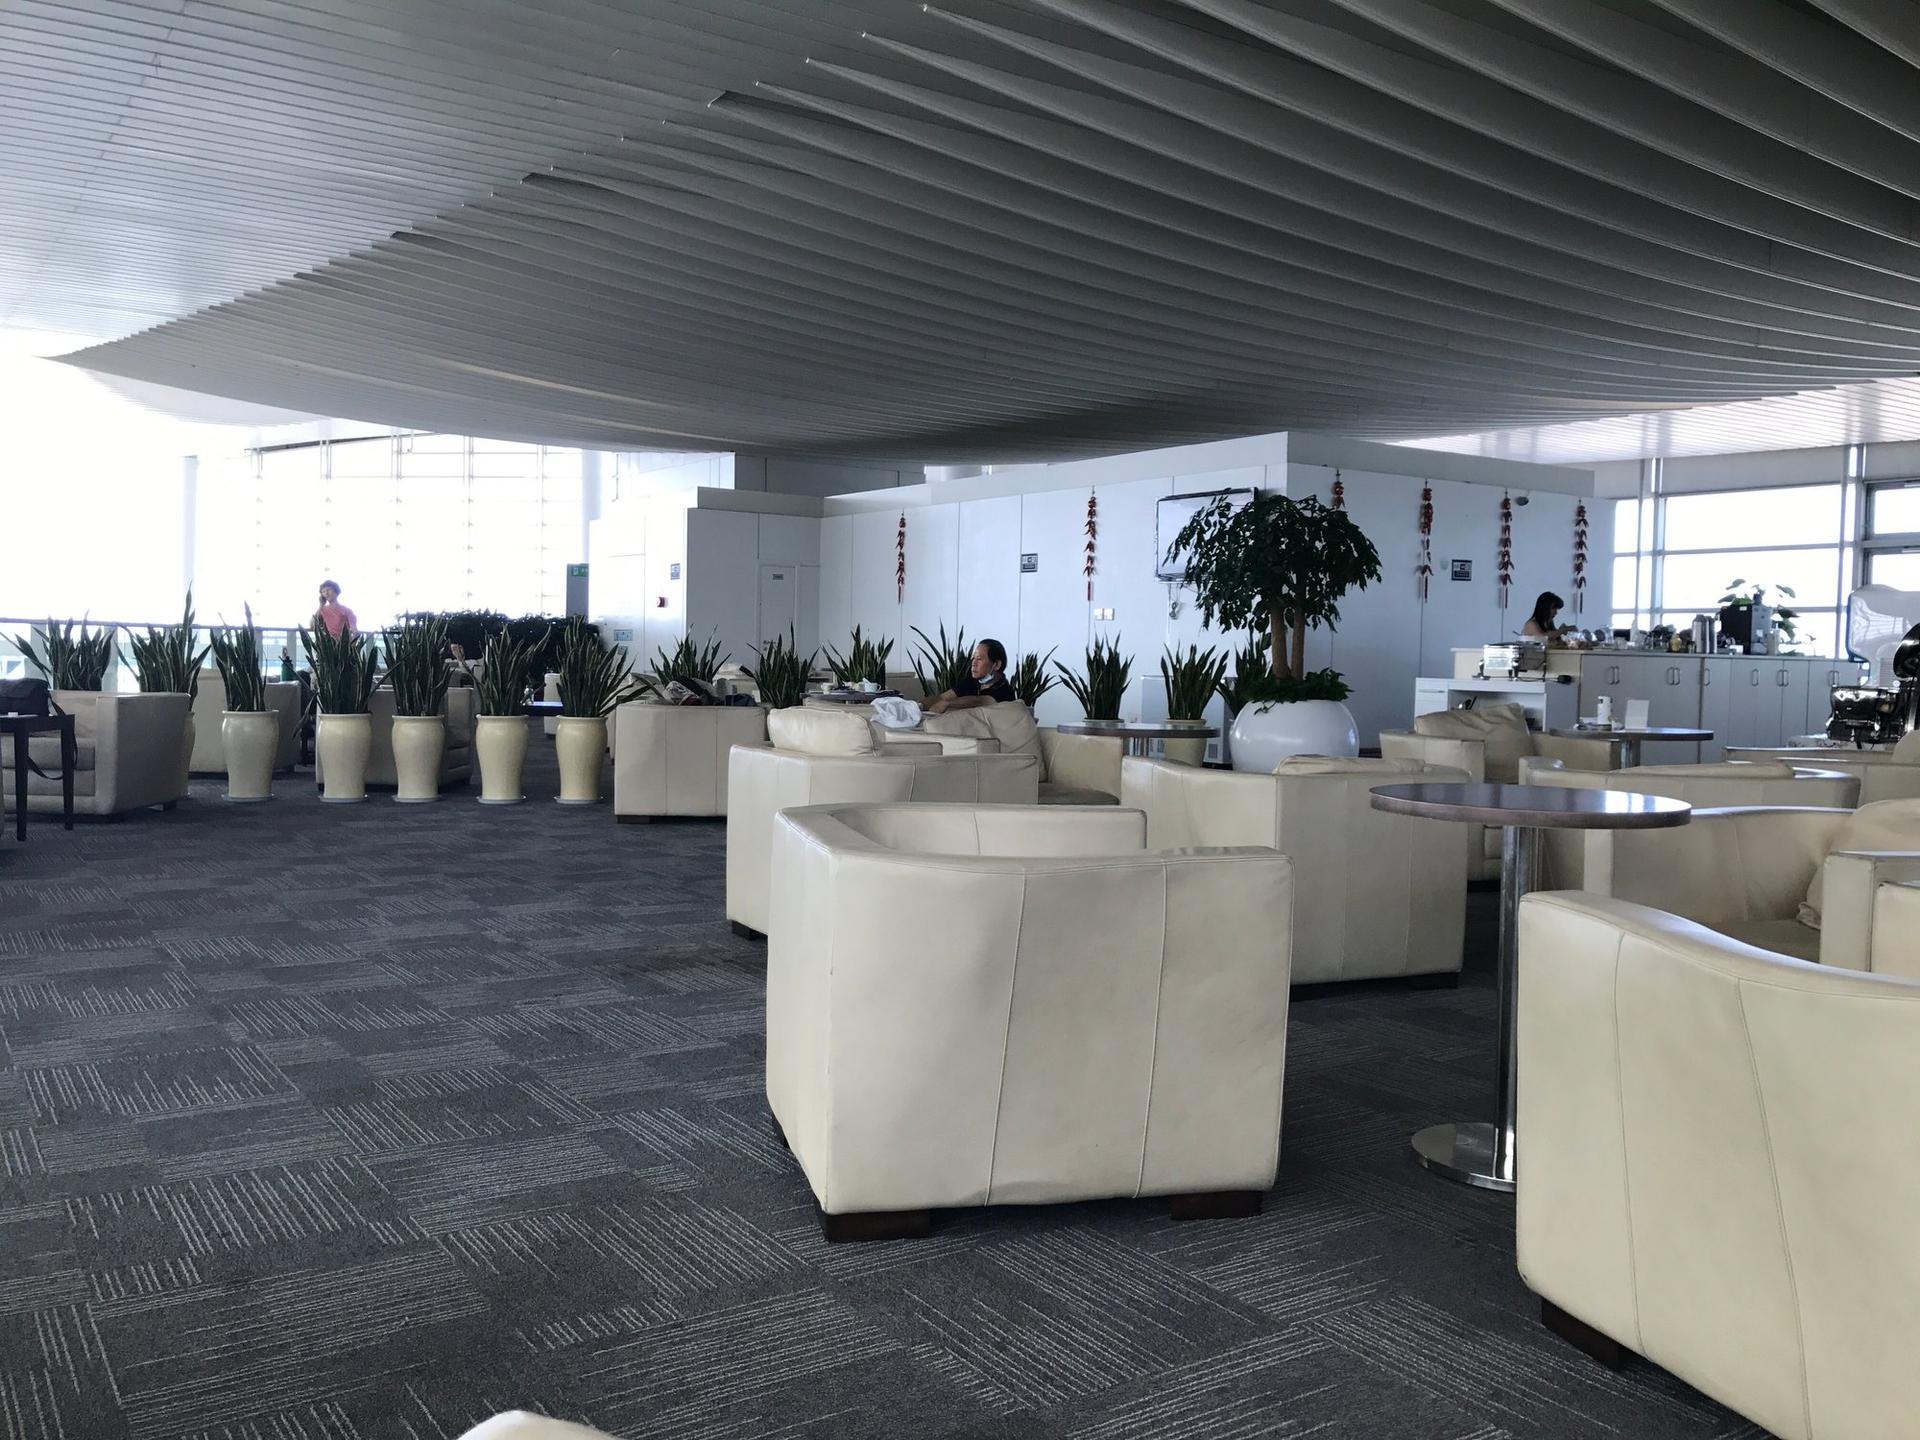 Hangzhou Xiaoshan Airport First Class Lounge image 2 of 8